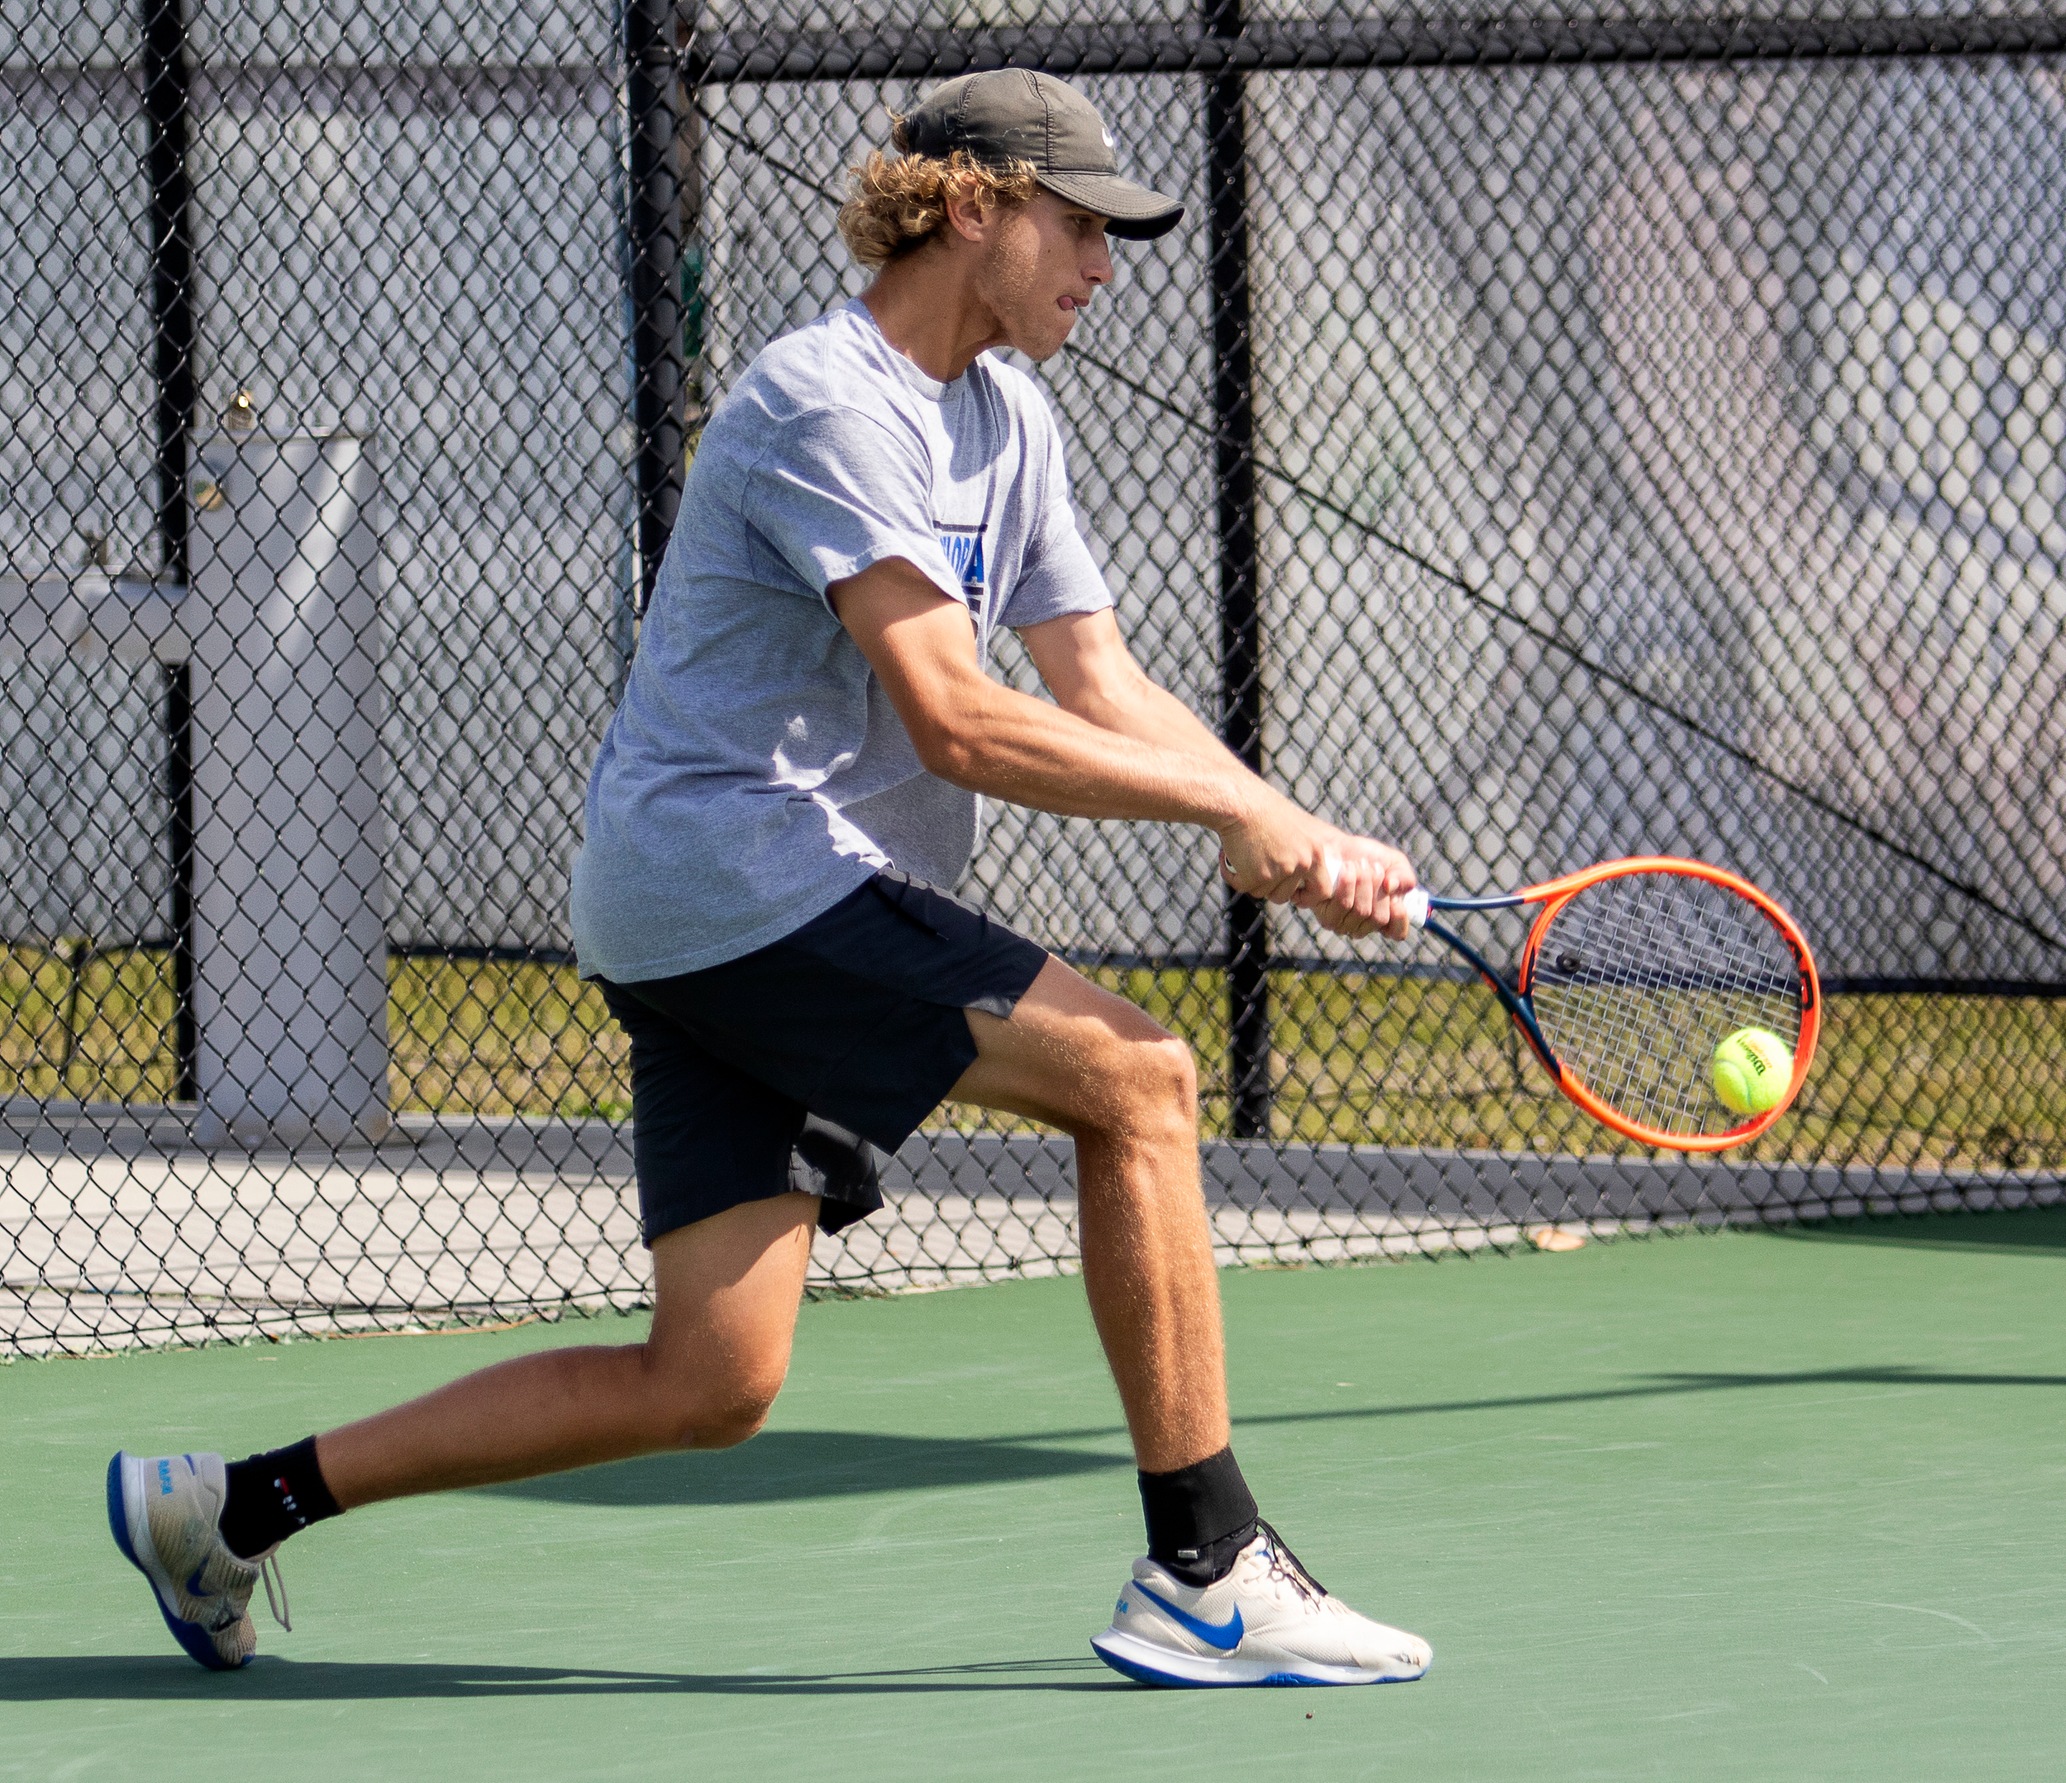 Men's tennis team sweeps Millenia University